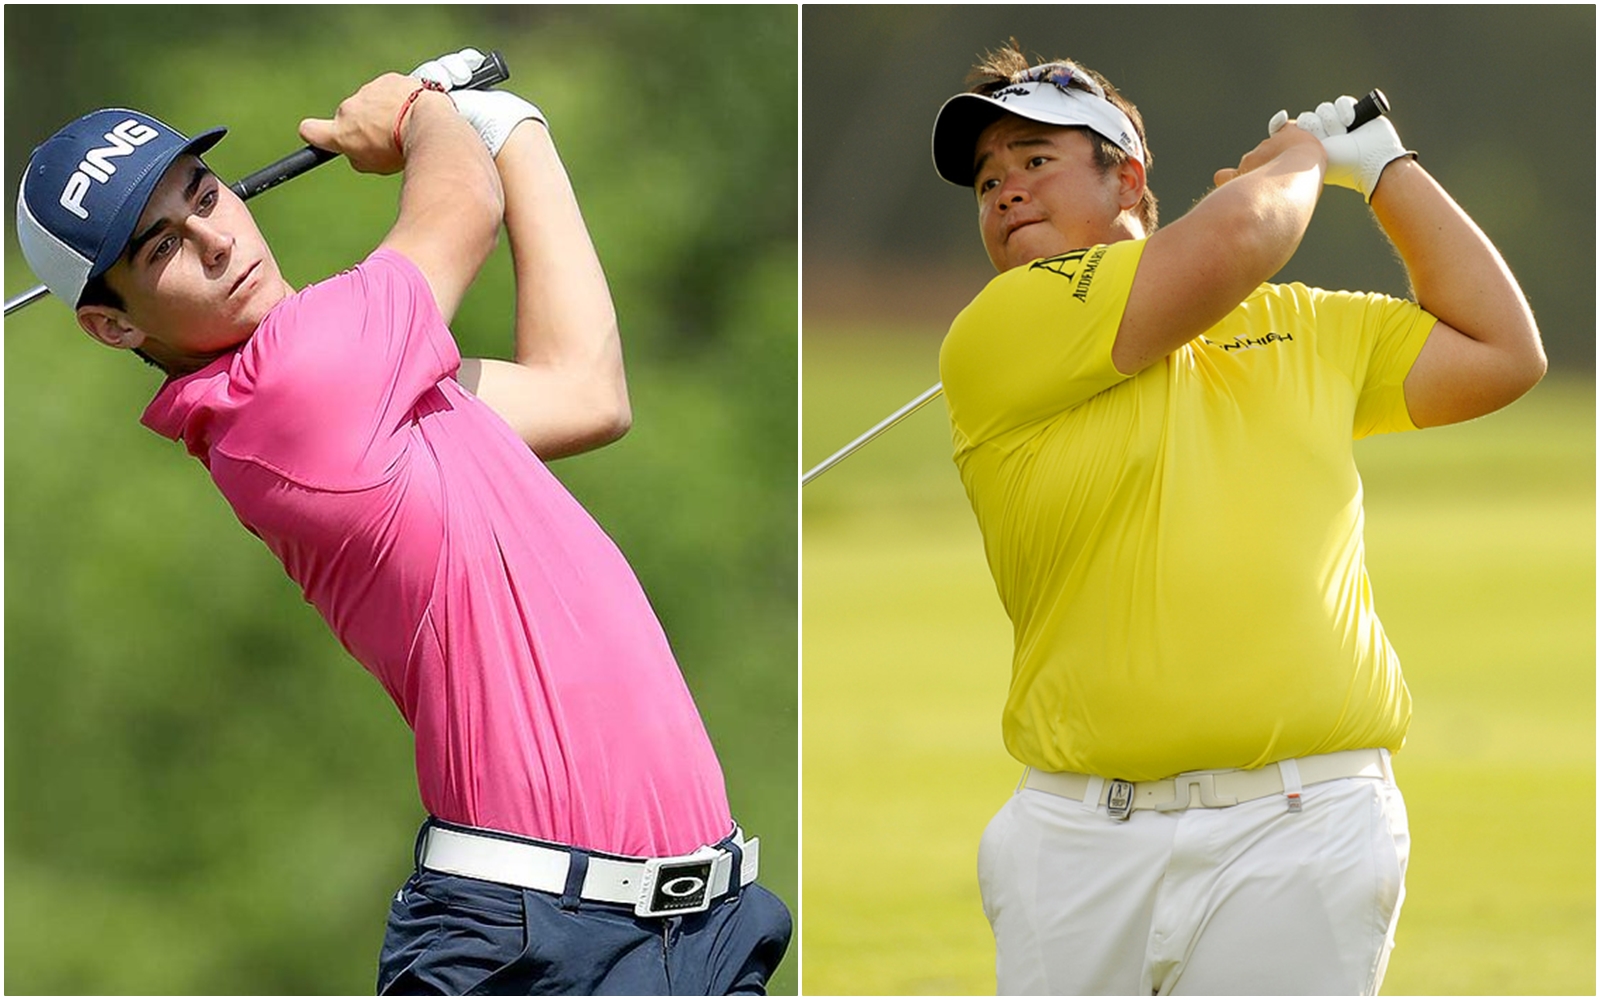 Kiradech Aphibarnrat và Joaquin Niemann được miễn giảm tham gia các vòng loại của PGA Tour